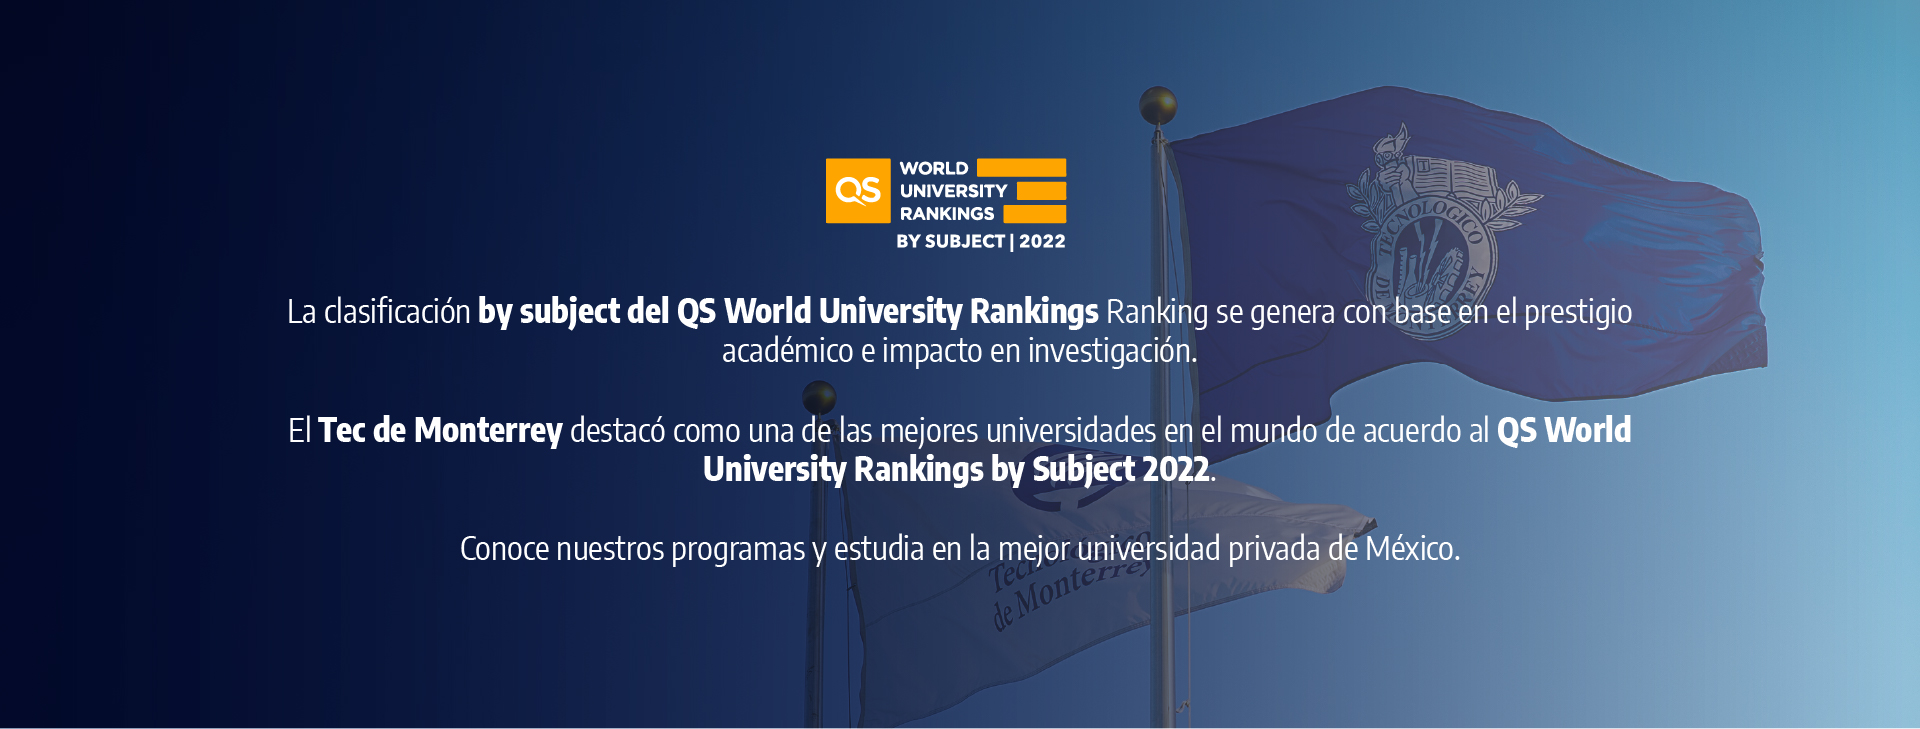 El Tec de Monterrey destacó como una de las mejores universidades del mundo